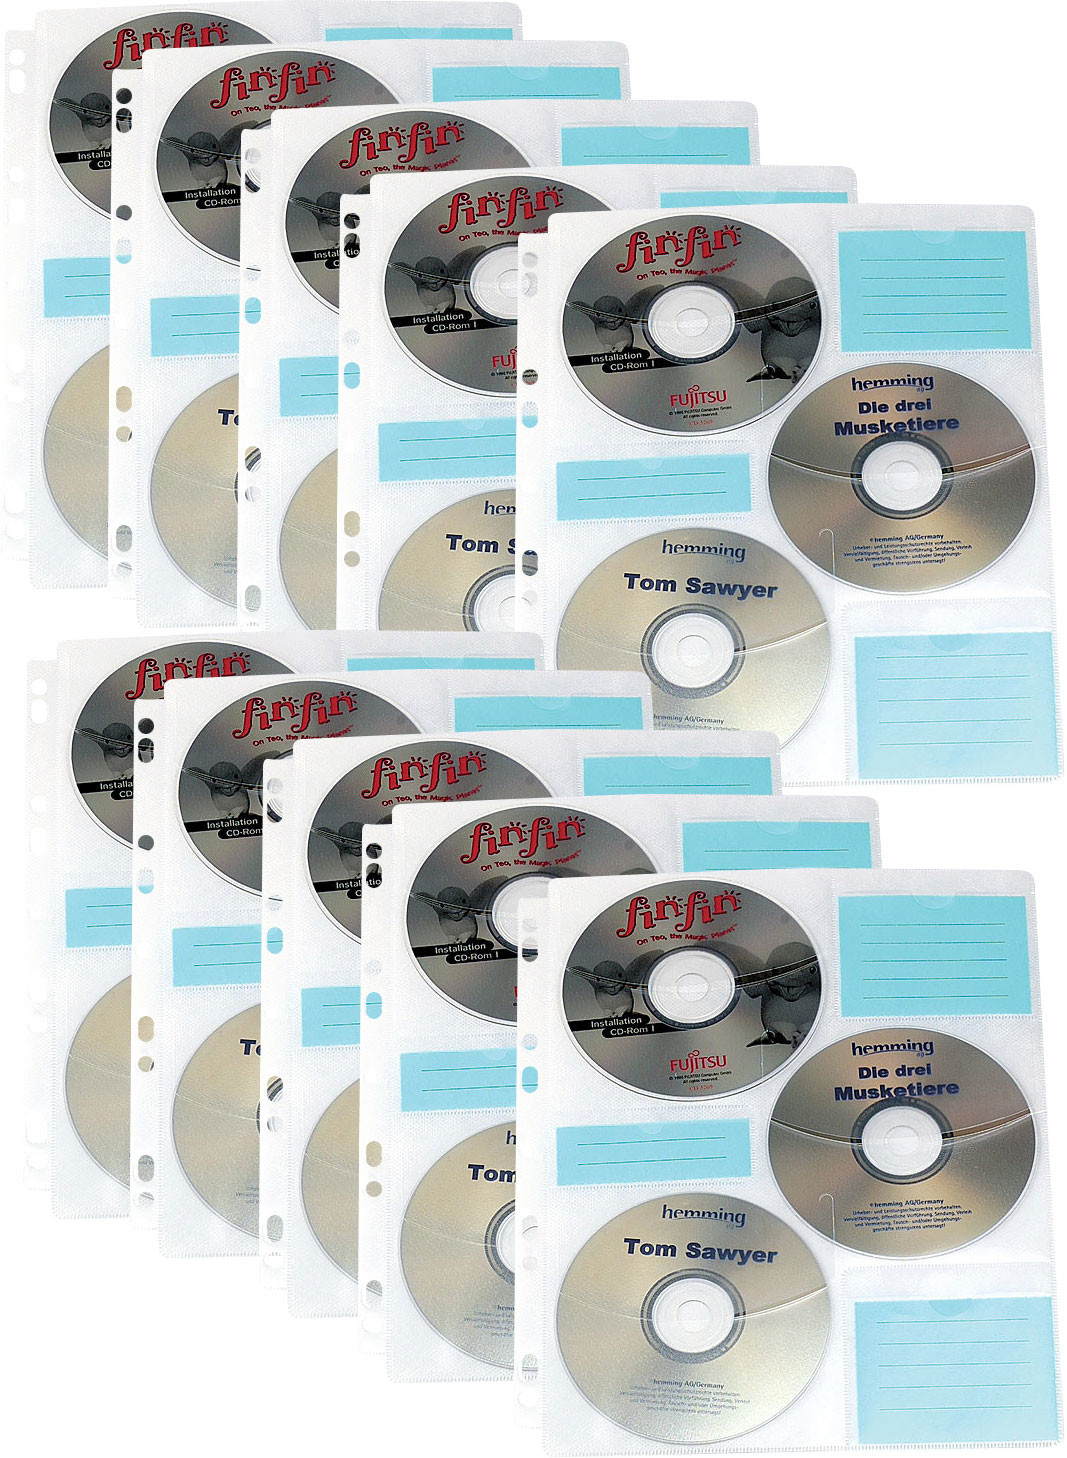 DURABLE Lot de 5 pochettes format A4 pour 4 CD/DVD pour classeur 5222-19